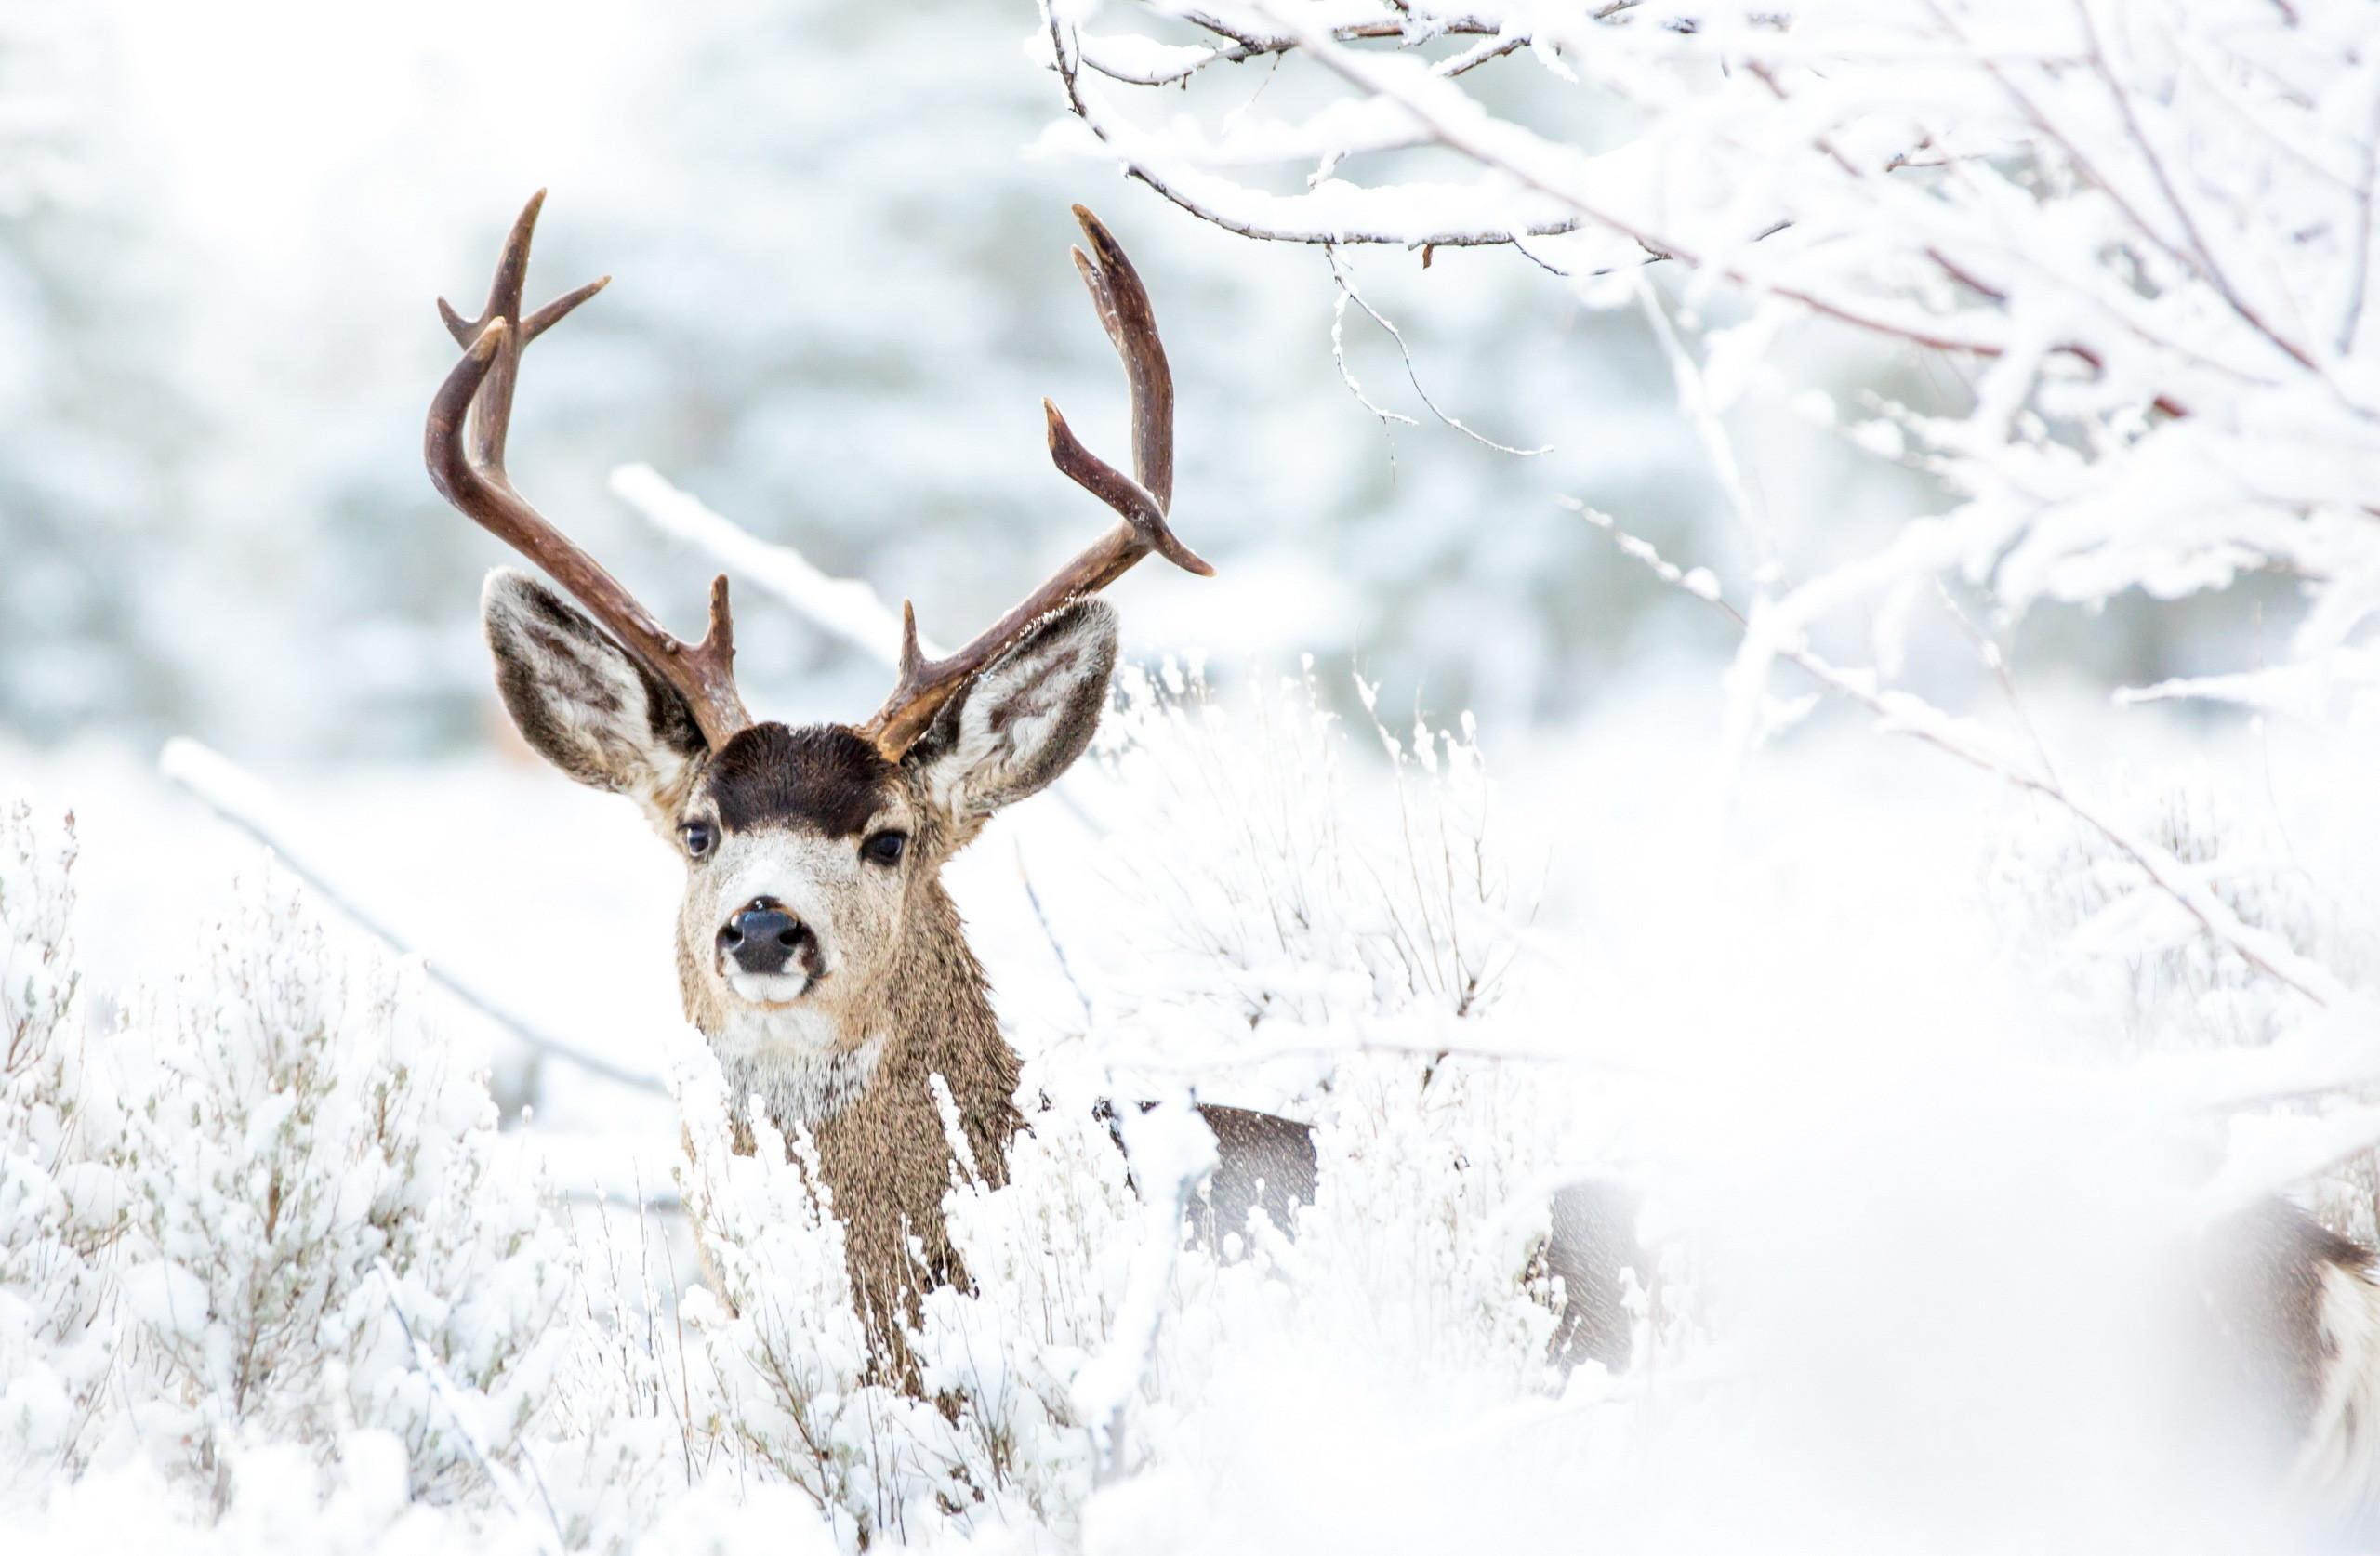 Deer Snow Winter Forest #7009413  Deer wallpaper, Deer pictures, Winter  animals